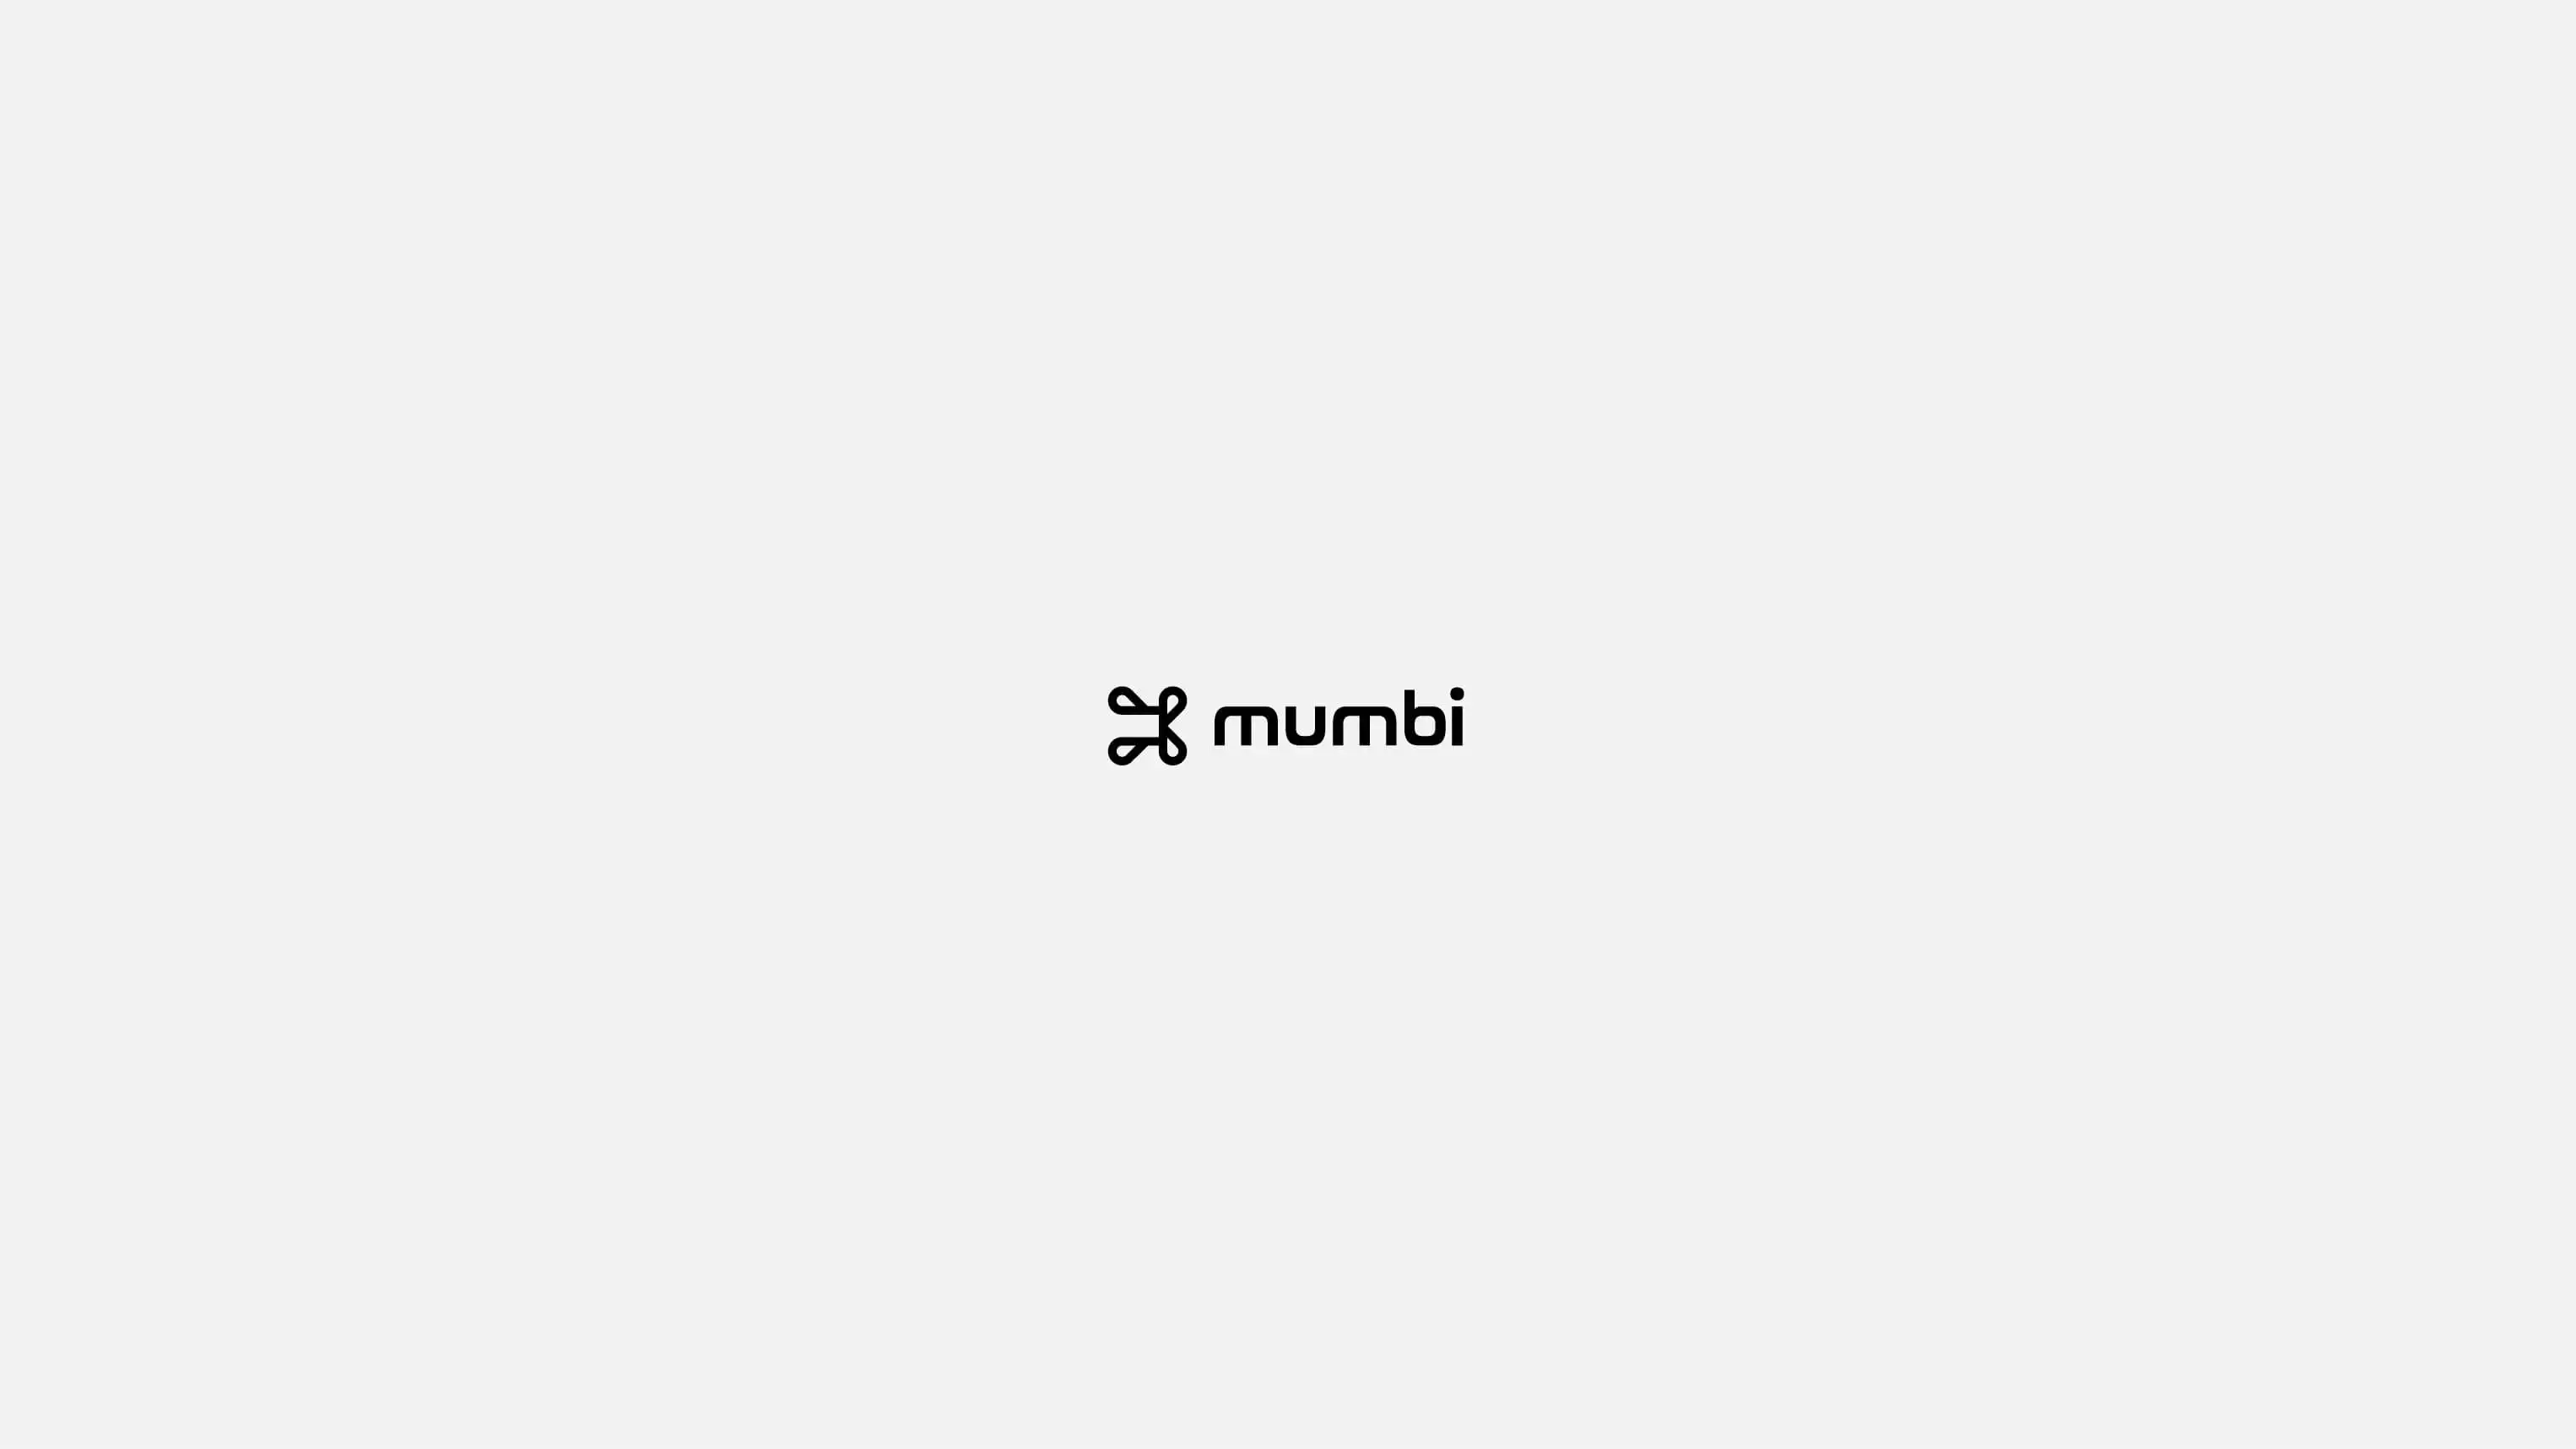 Mumbi's logotype